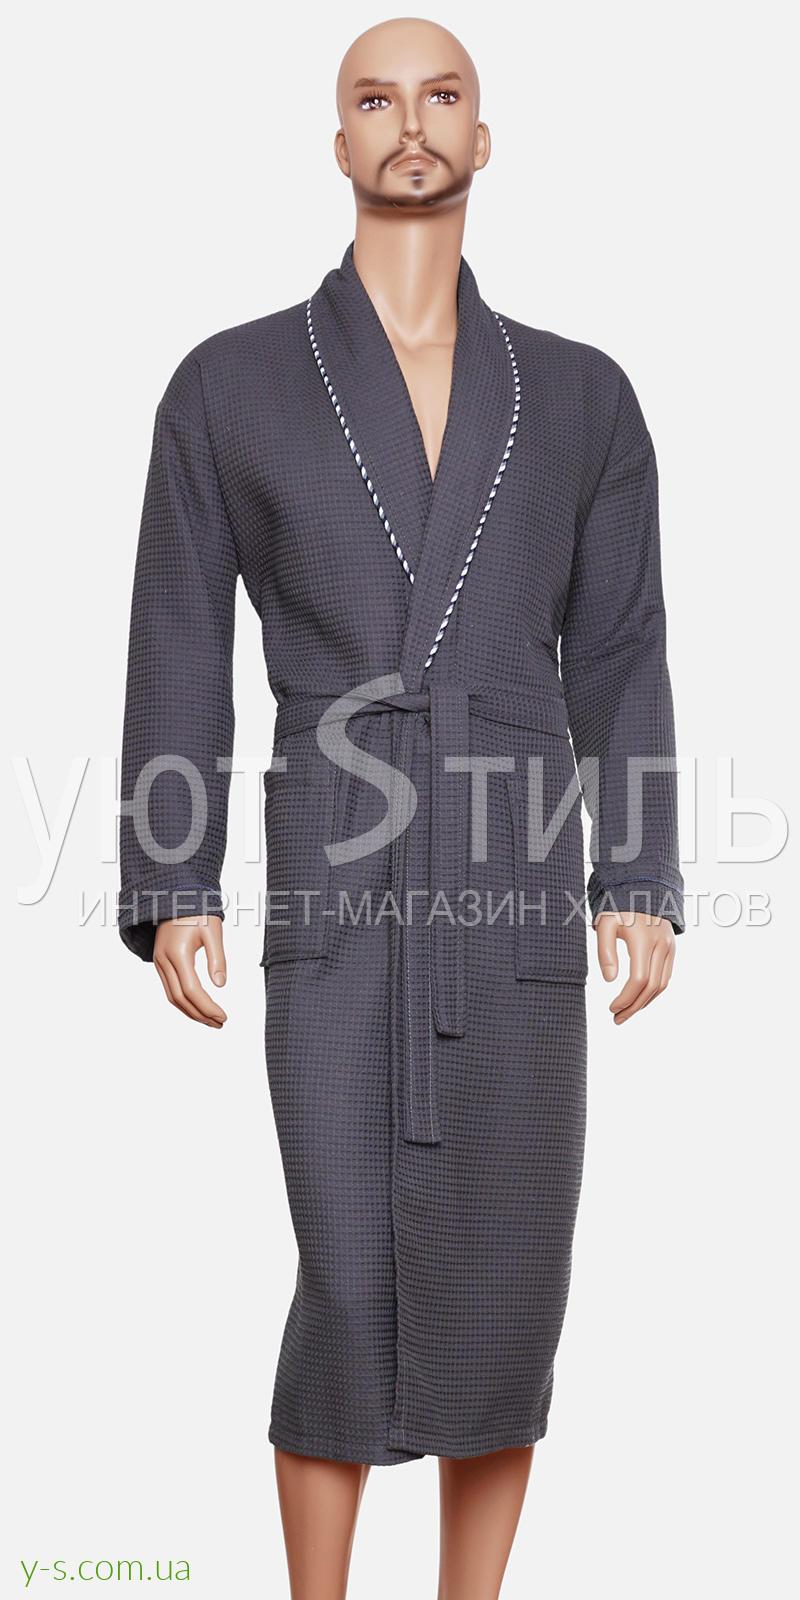 Вафельний чоловічий халат темно-сірого кольору BE2110